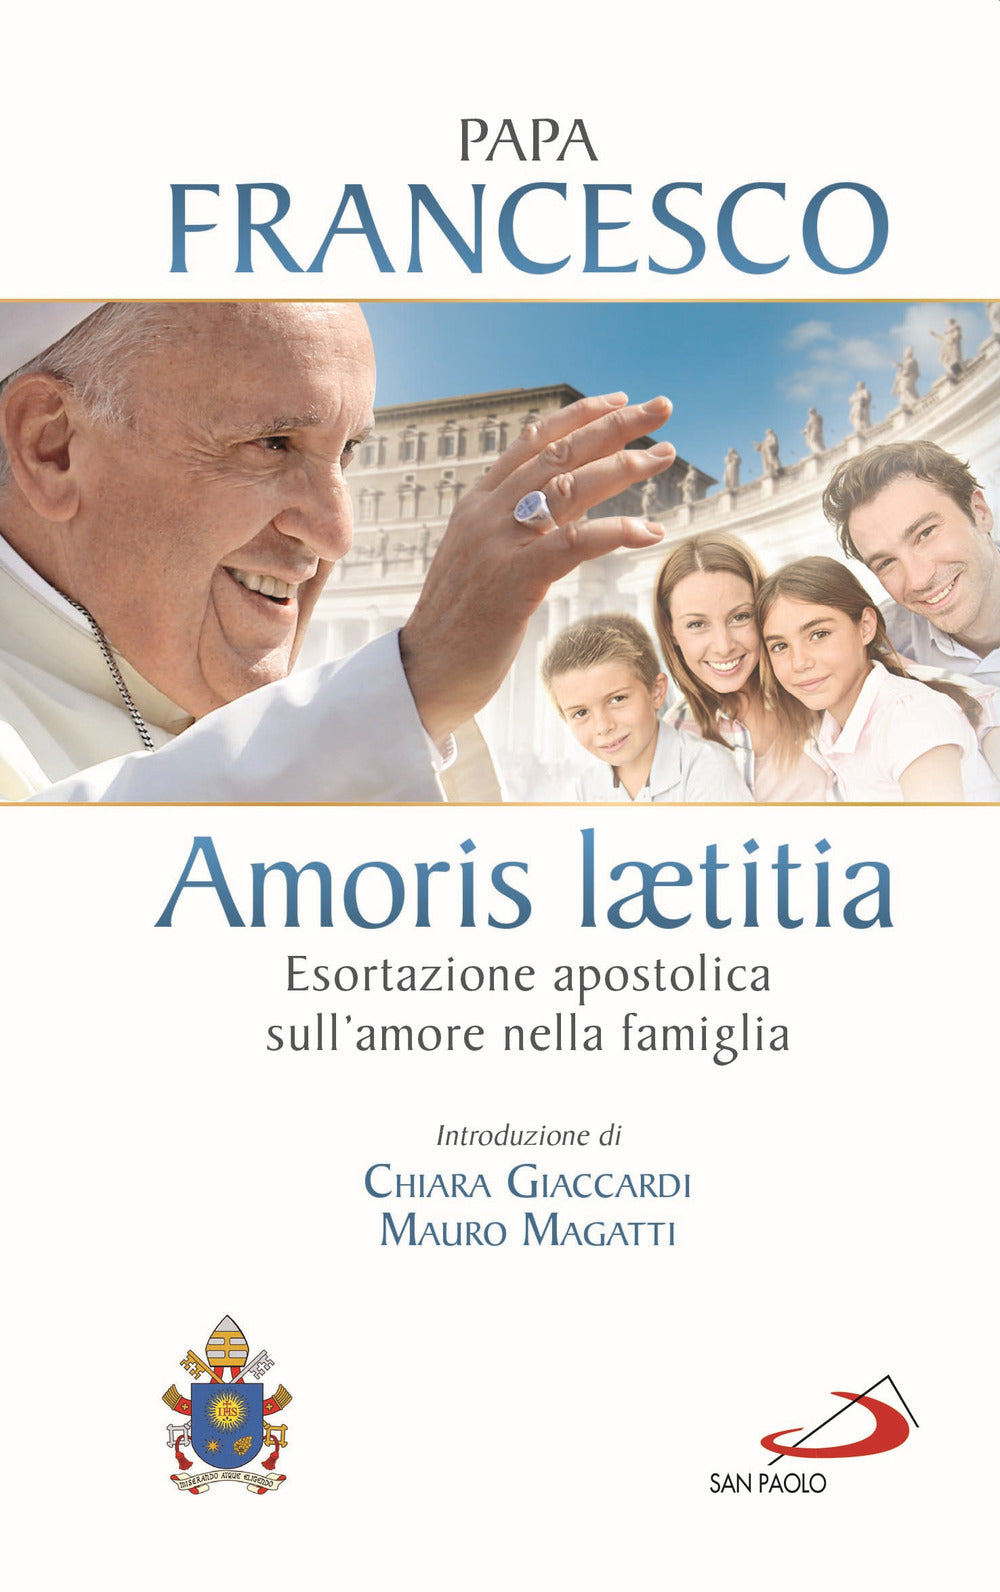 Amoris laetitia. Esortazione apostolica sull'amore nella famiglia. Introduzione di Chiara Giaccardi e Mauro Magatti.